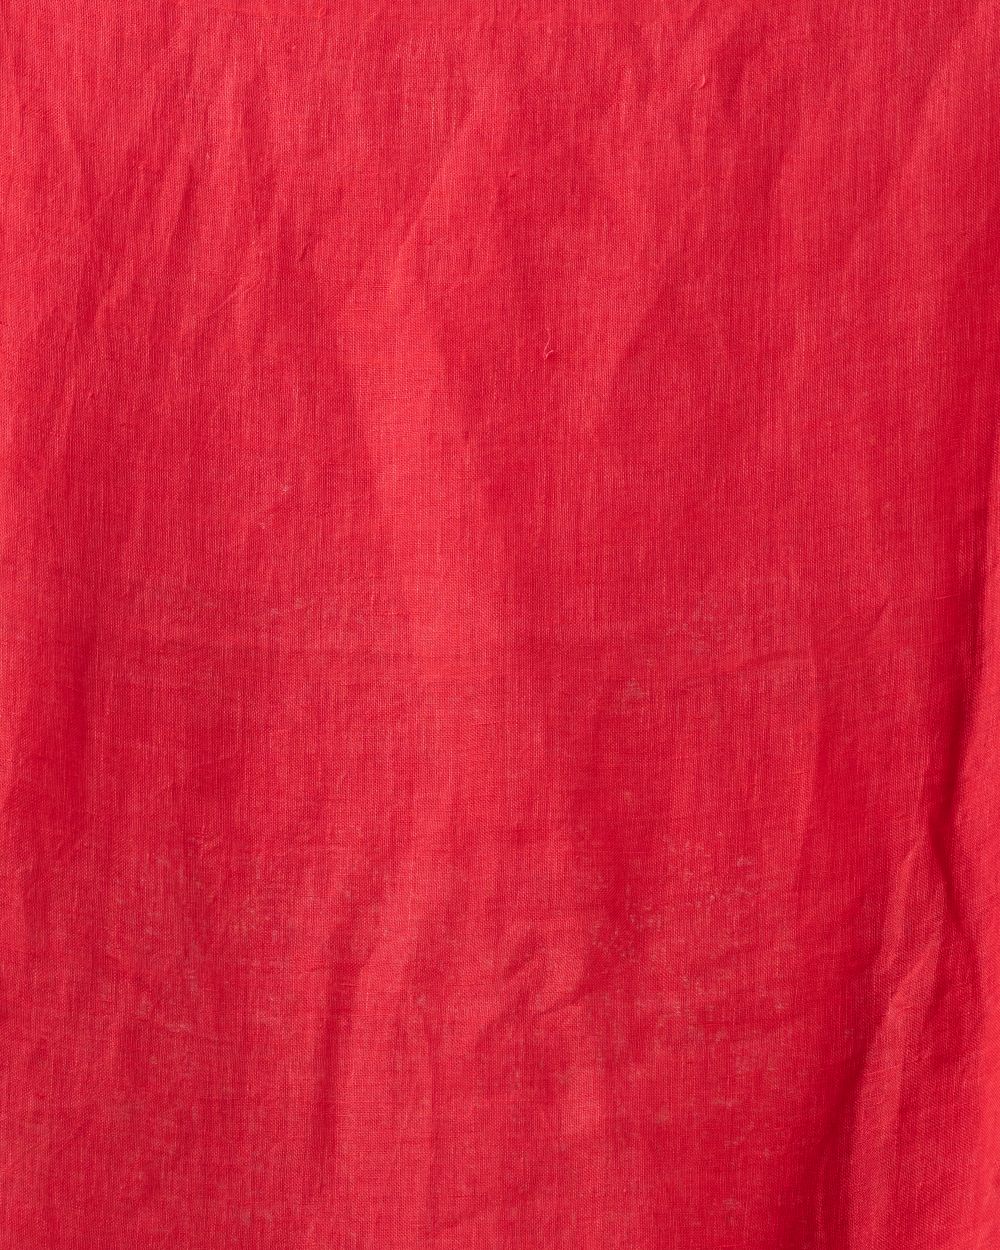 Persian red handwoven linen bengal saree